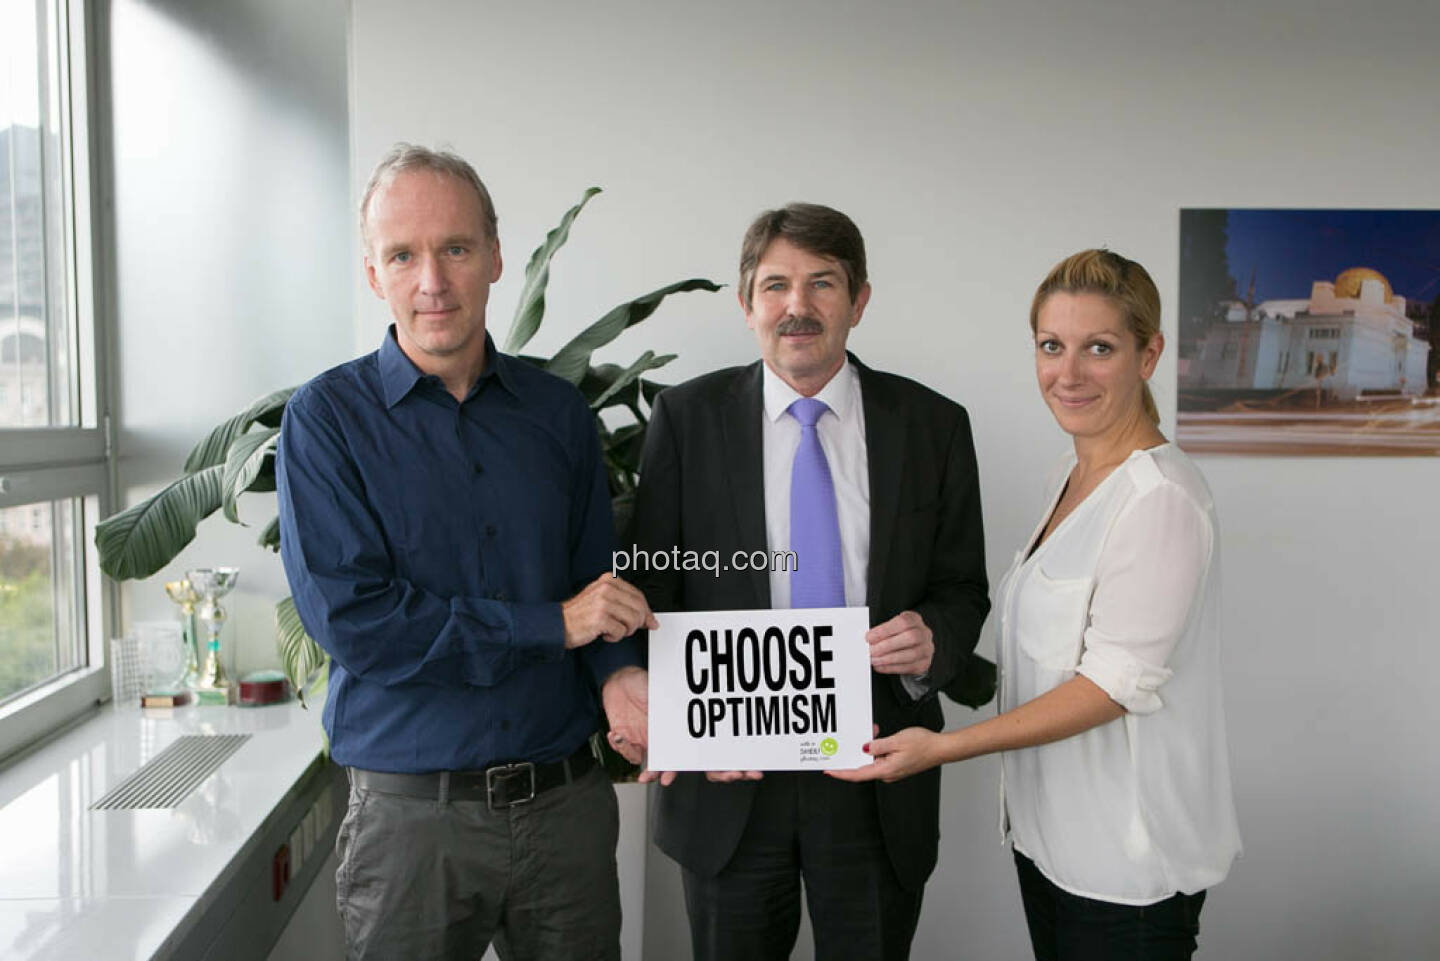 Christian Drastil, Ernst Vejdovszky (S Immo), Elisabeth Wagerer (S Immo), Choose Optimism